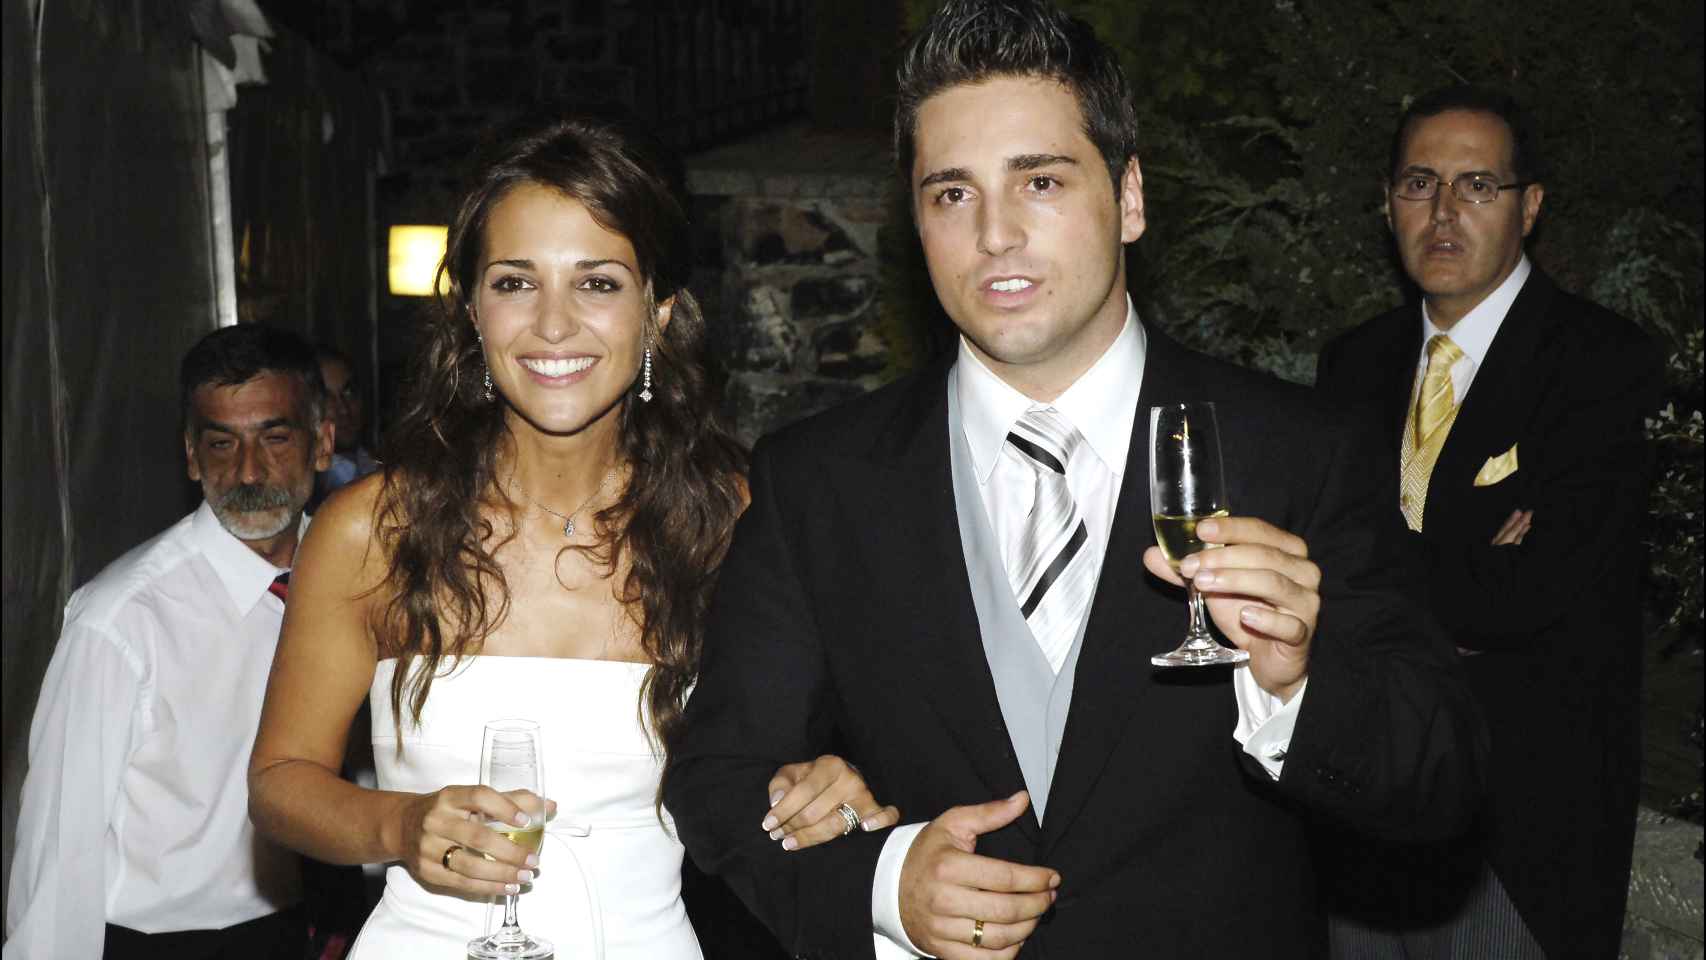 Paula y David, el día de su boda en 2006.